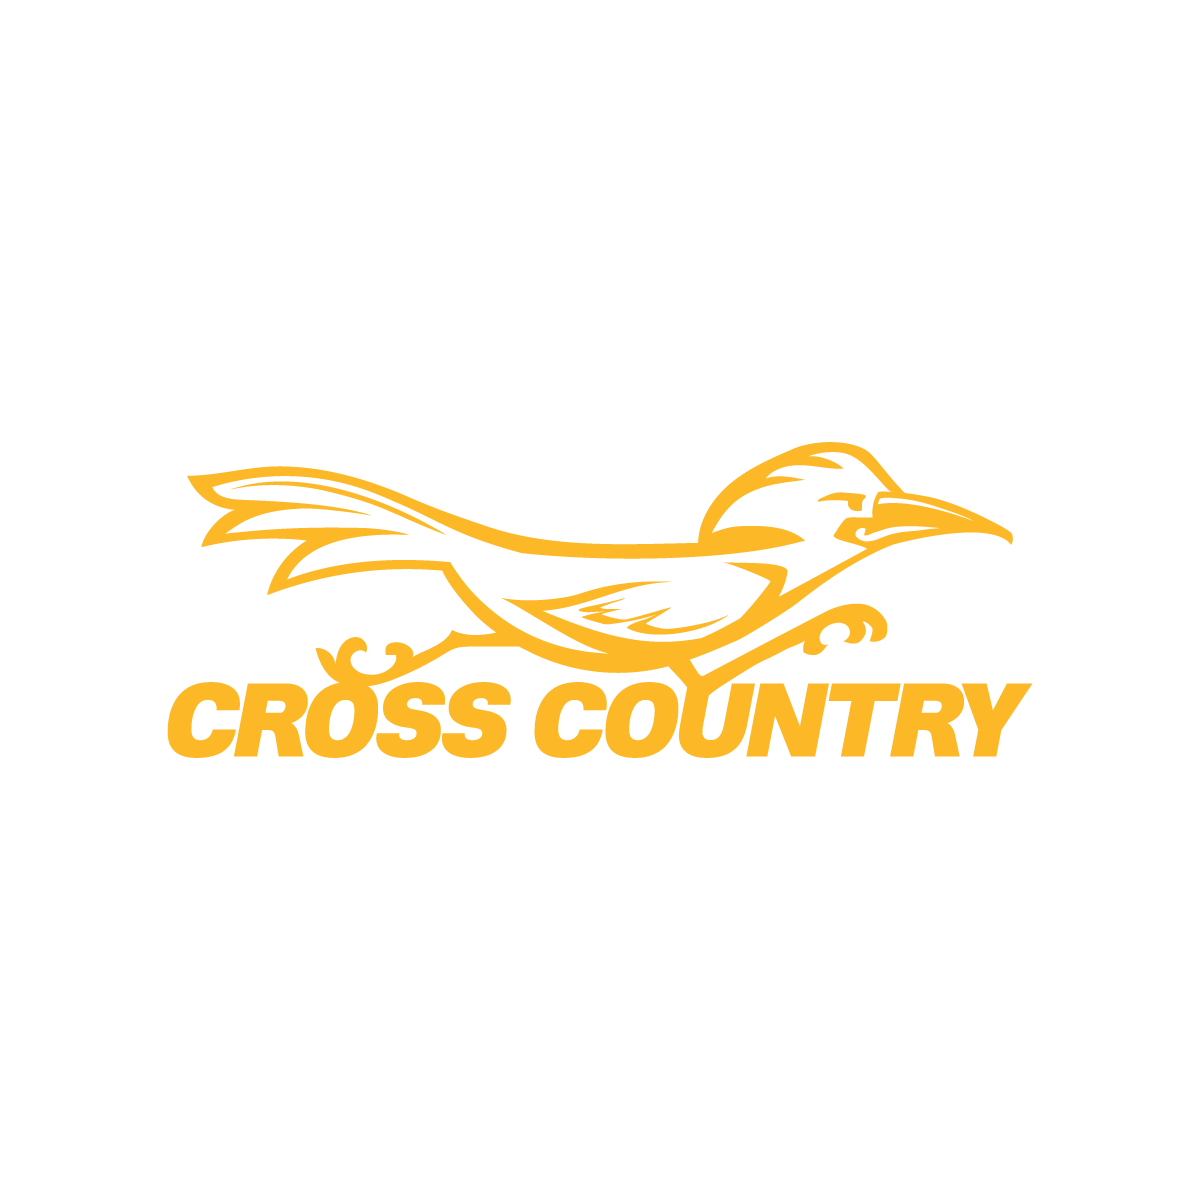 Cross Country mascot- yellow